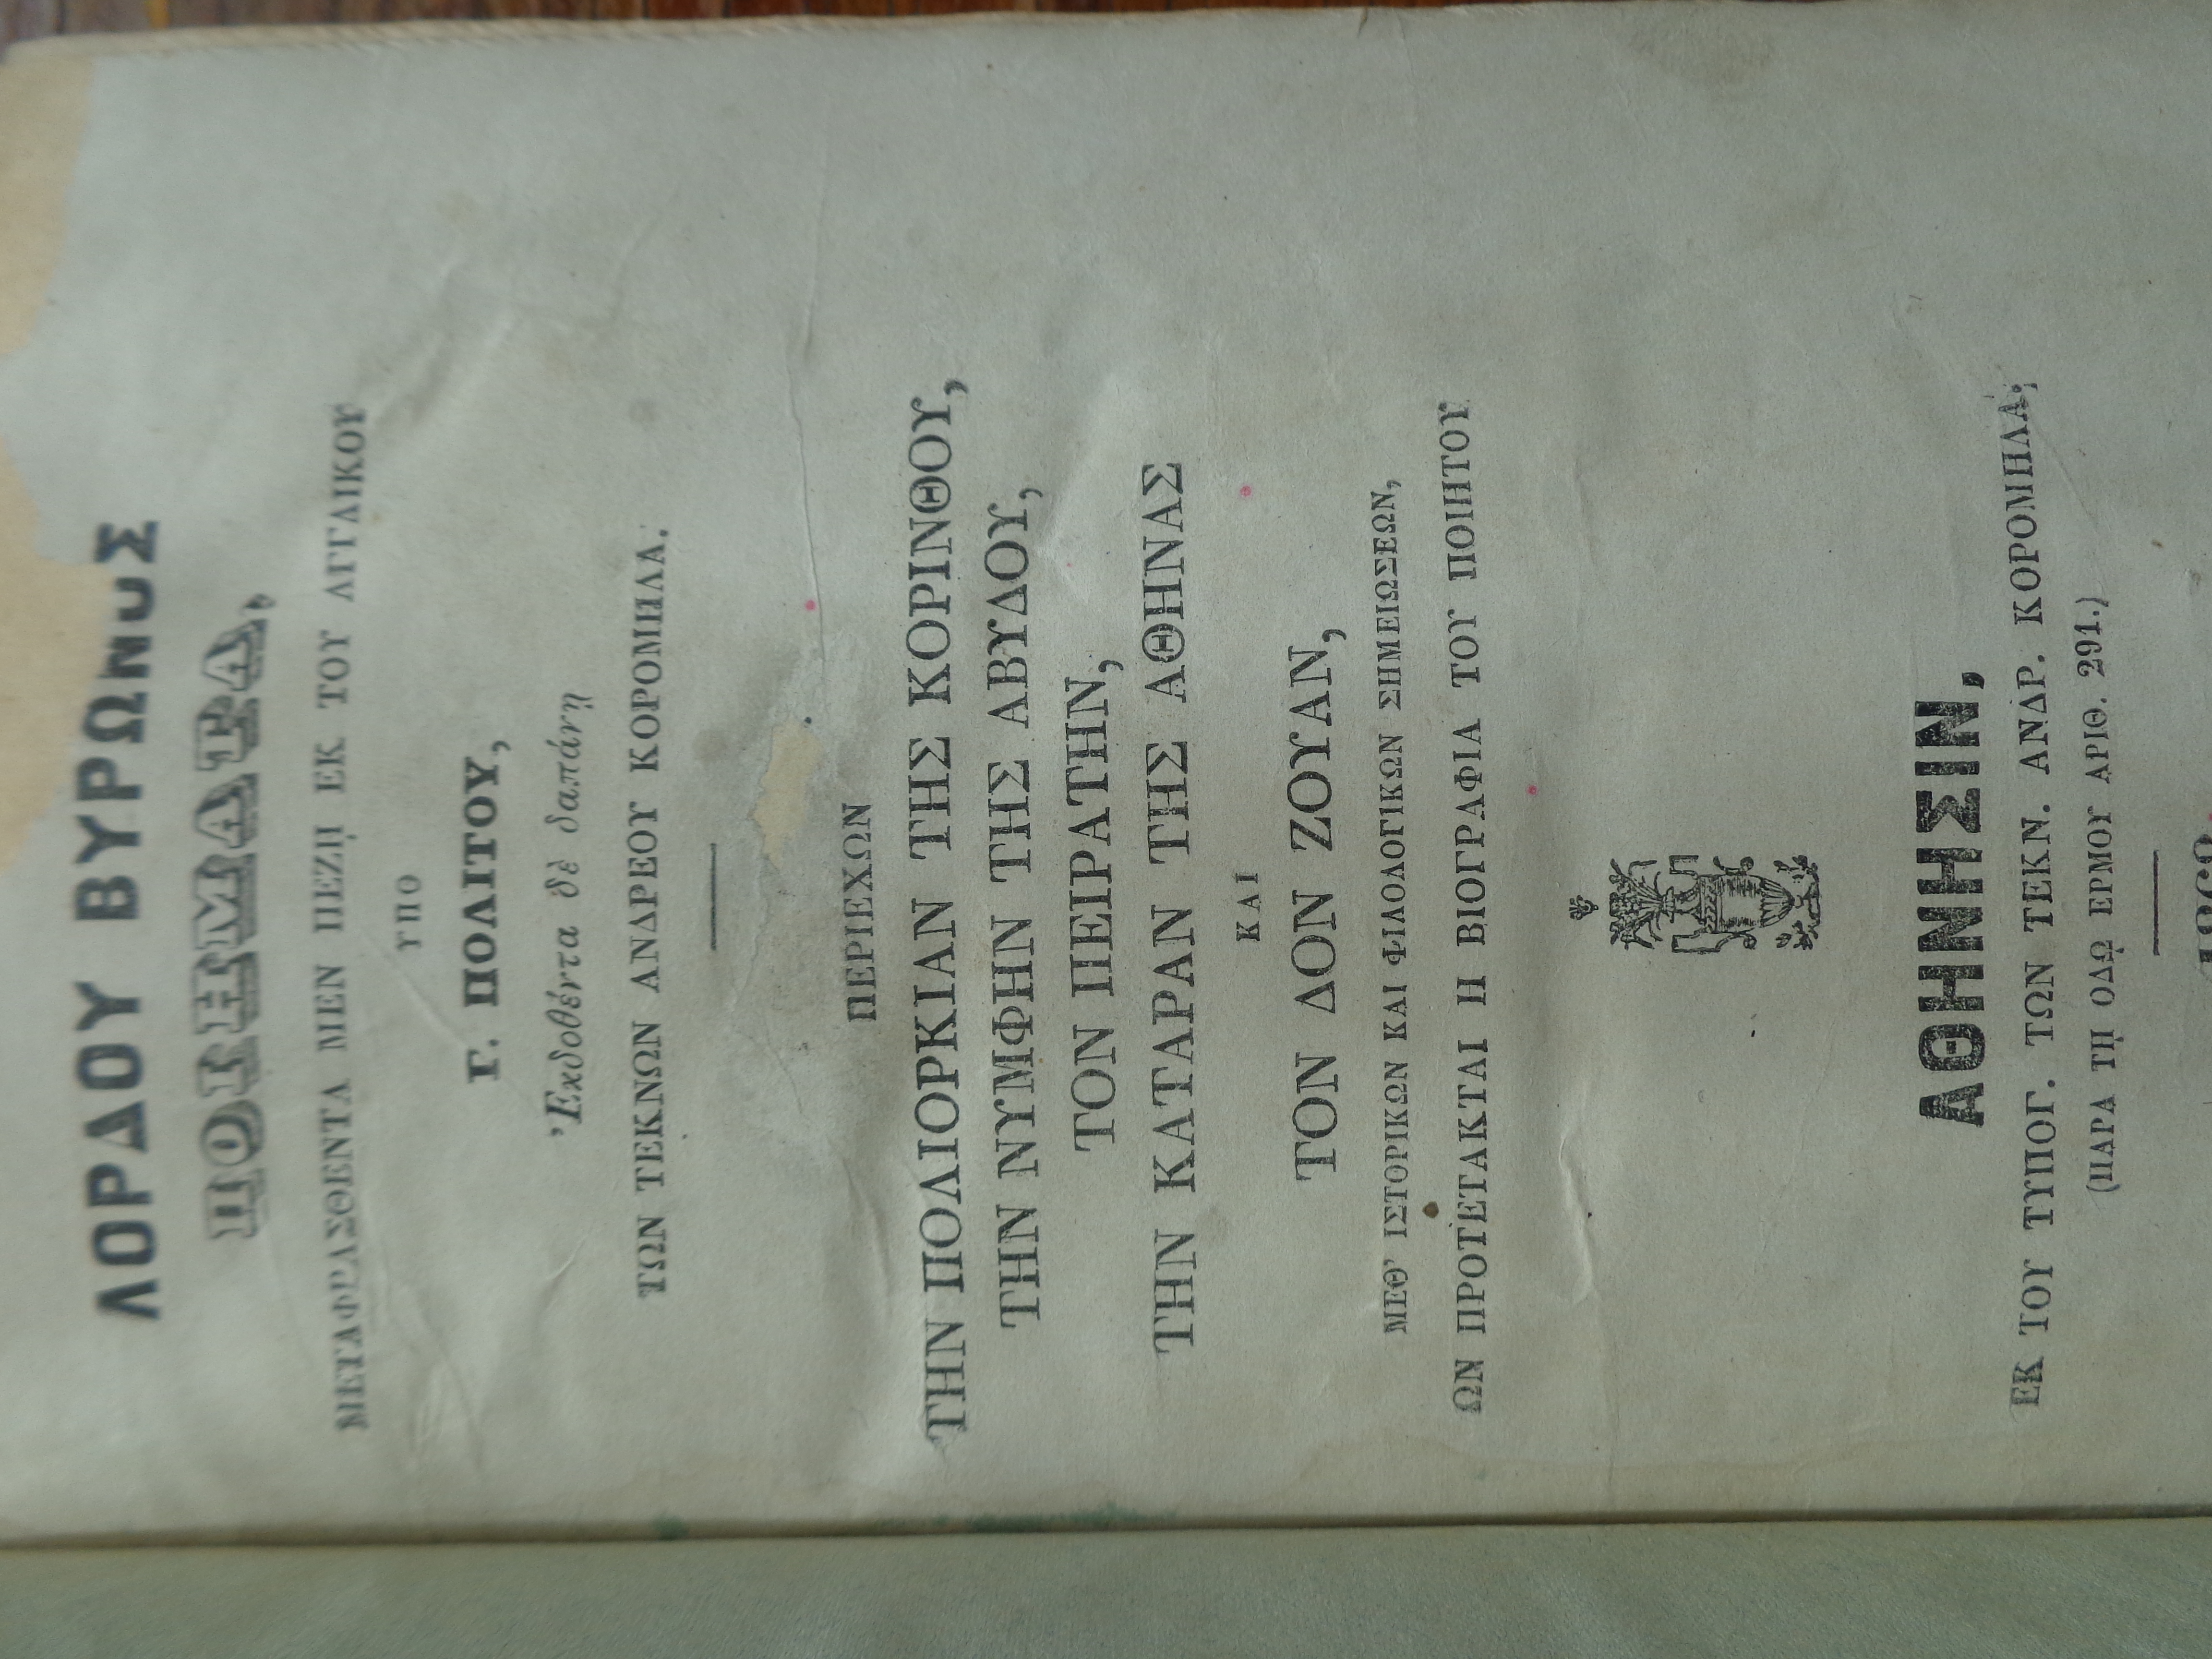 ΠΟΛΙΤΗΣ Γ. (μεταφ.) / LORD BYRON, Λόρδου Βύρωνος Ποιήματα μεταφρασθέντα μεν πεζή εκ του Αγγλικού Υπό Γ. Πολίτου», Αθήνα, 1868, 1871